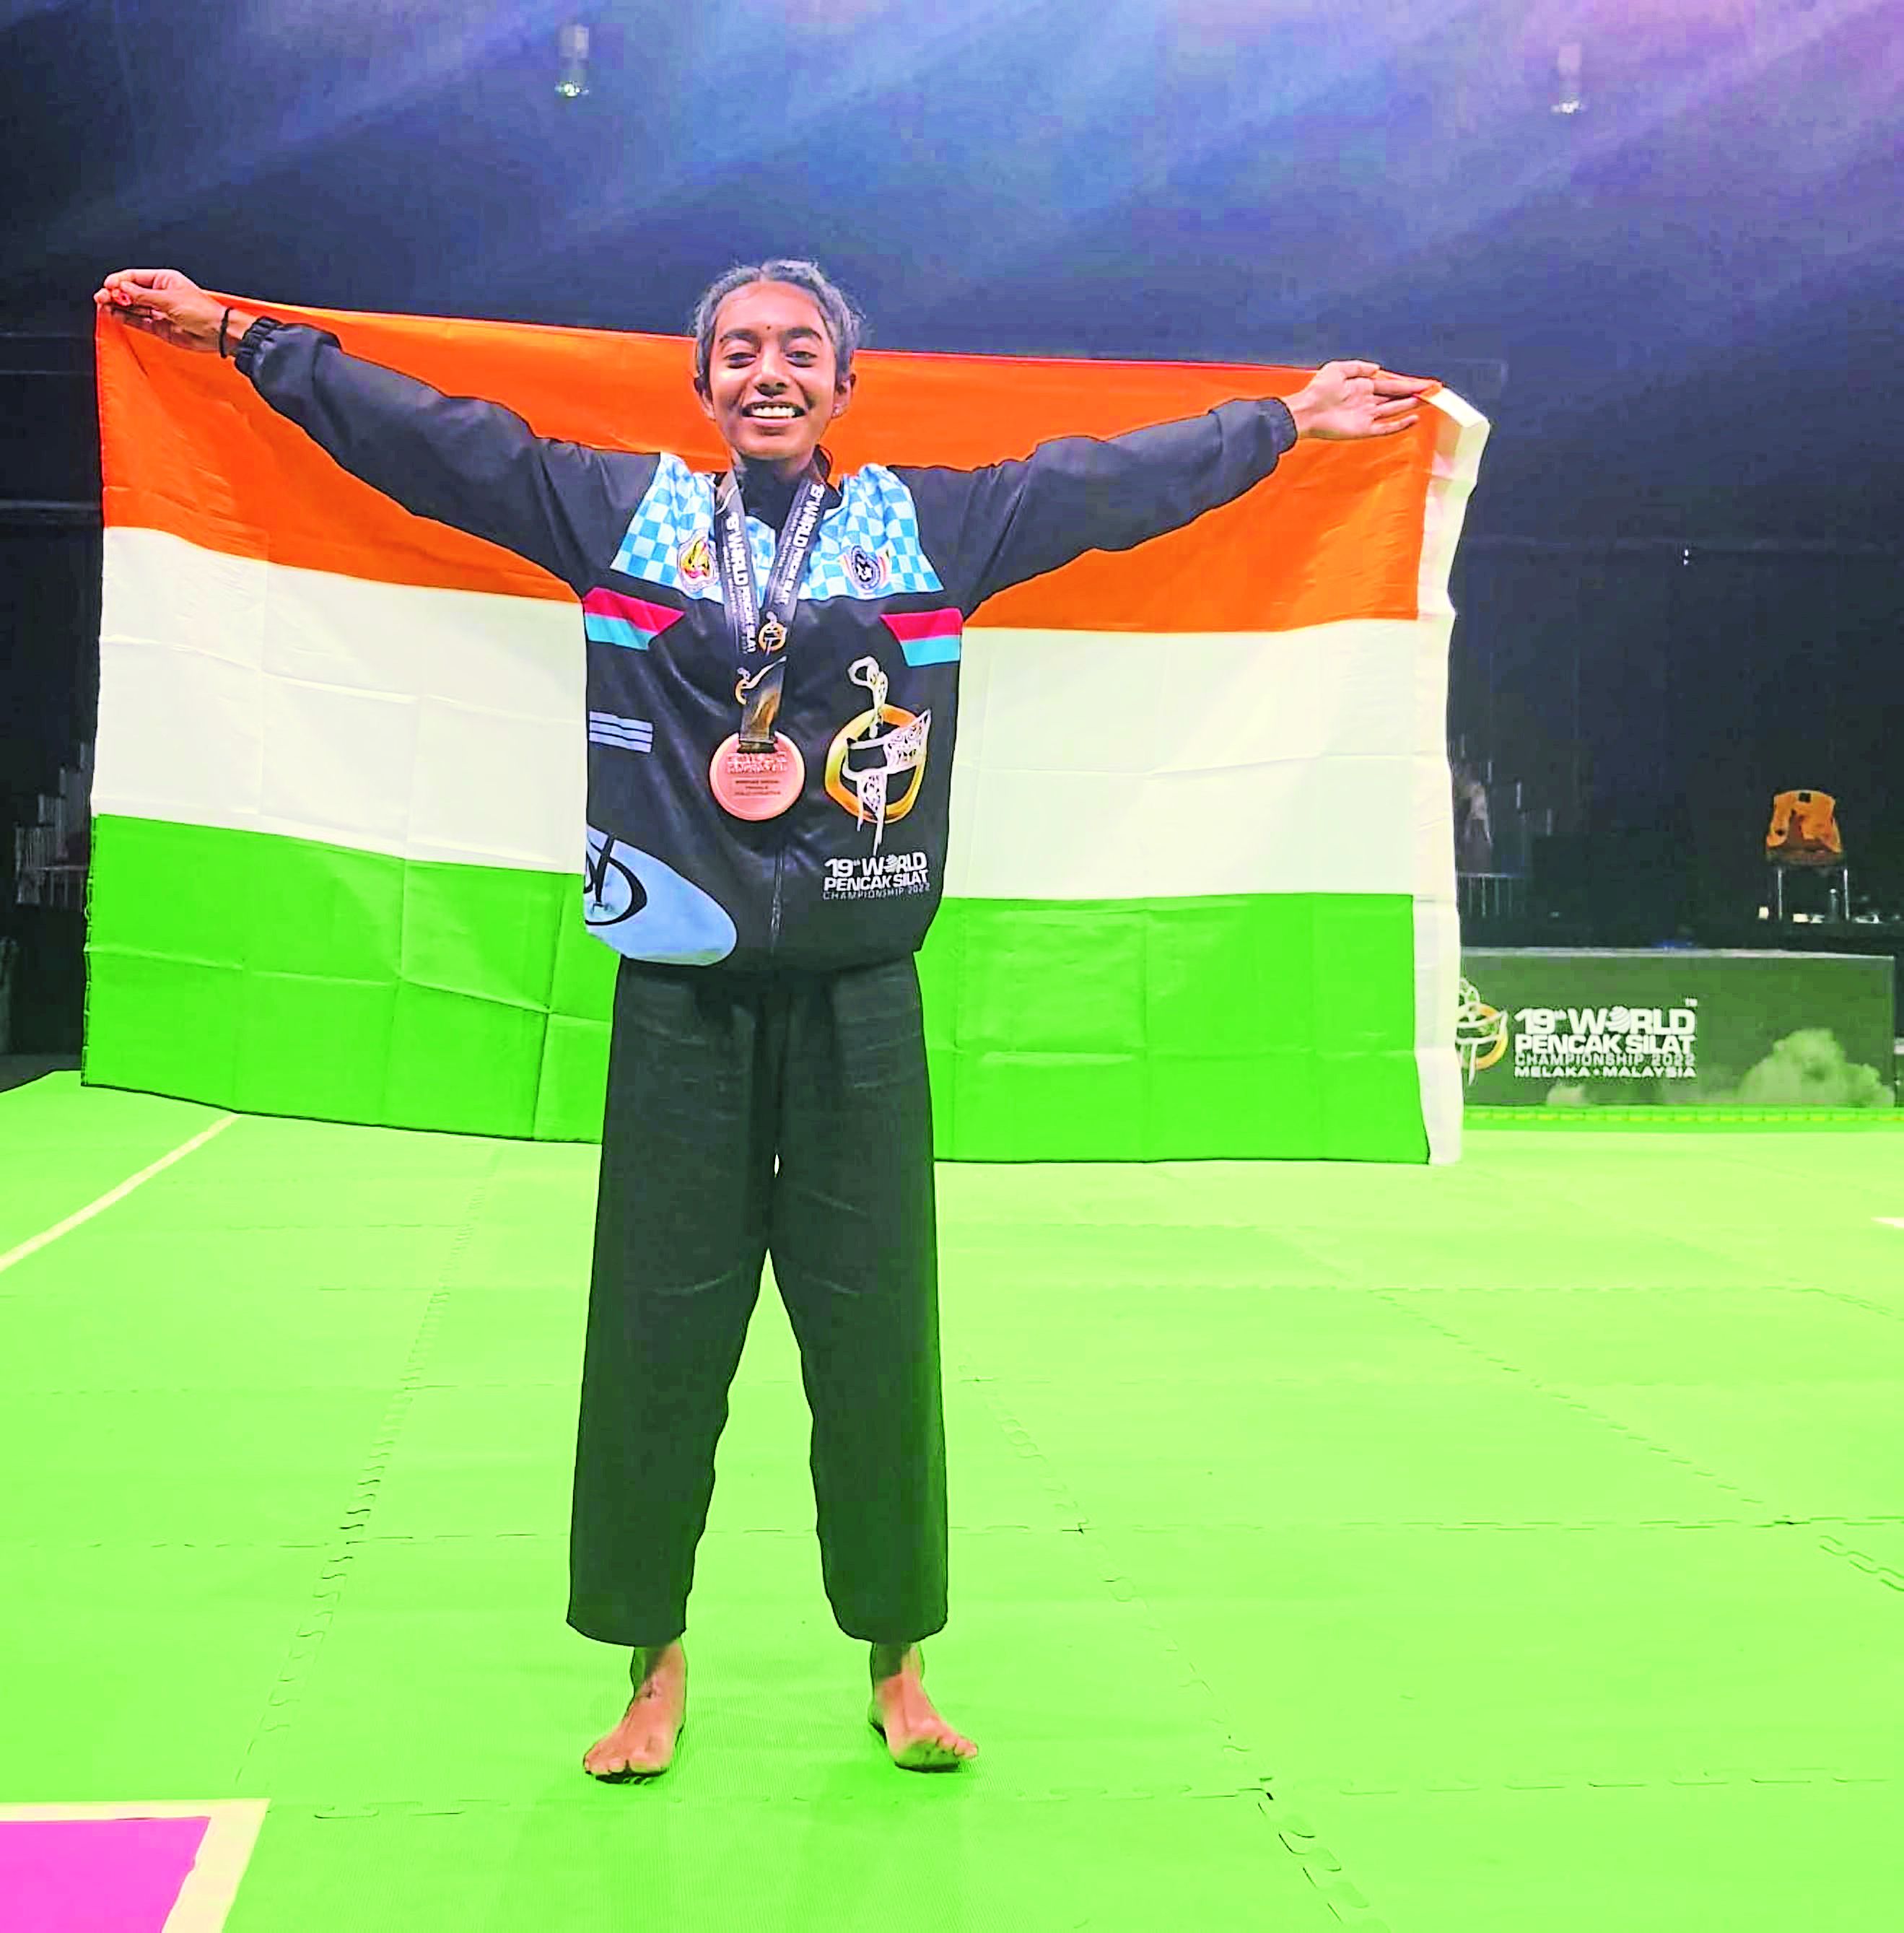 19वीं विश्व पेंचक सिलाट चैंपियनशिप में दिशा ने दिलाया भारत को पदक